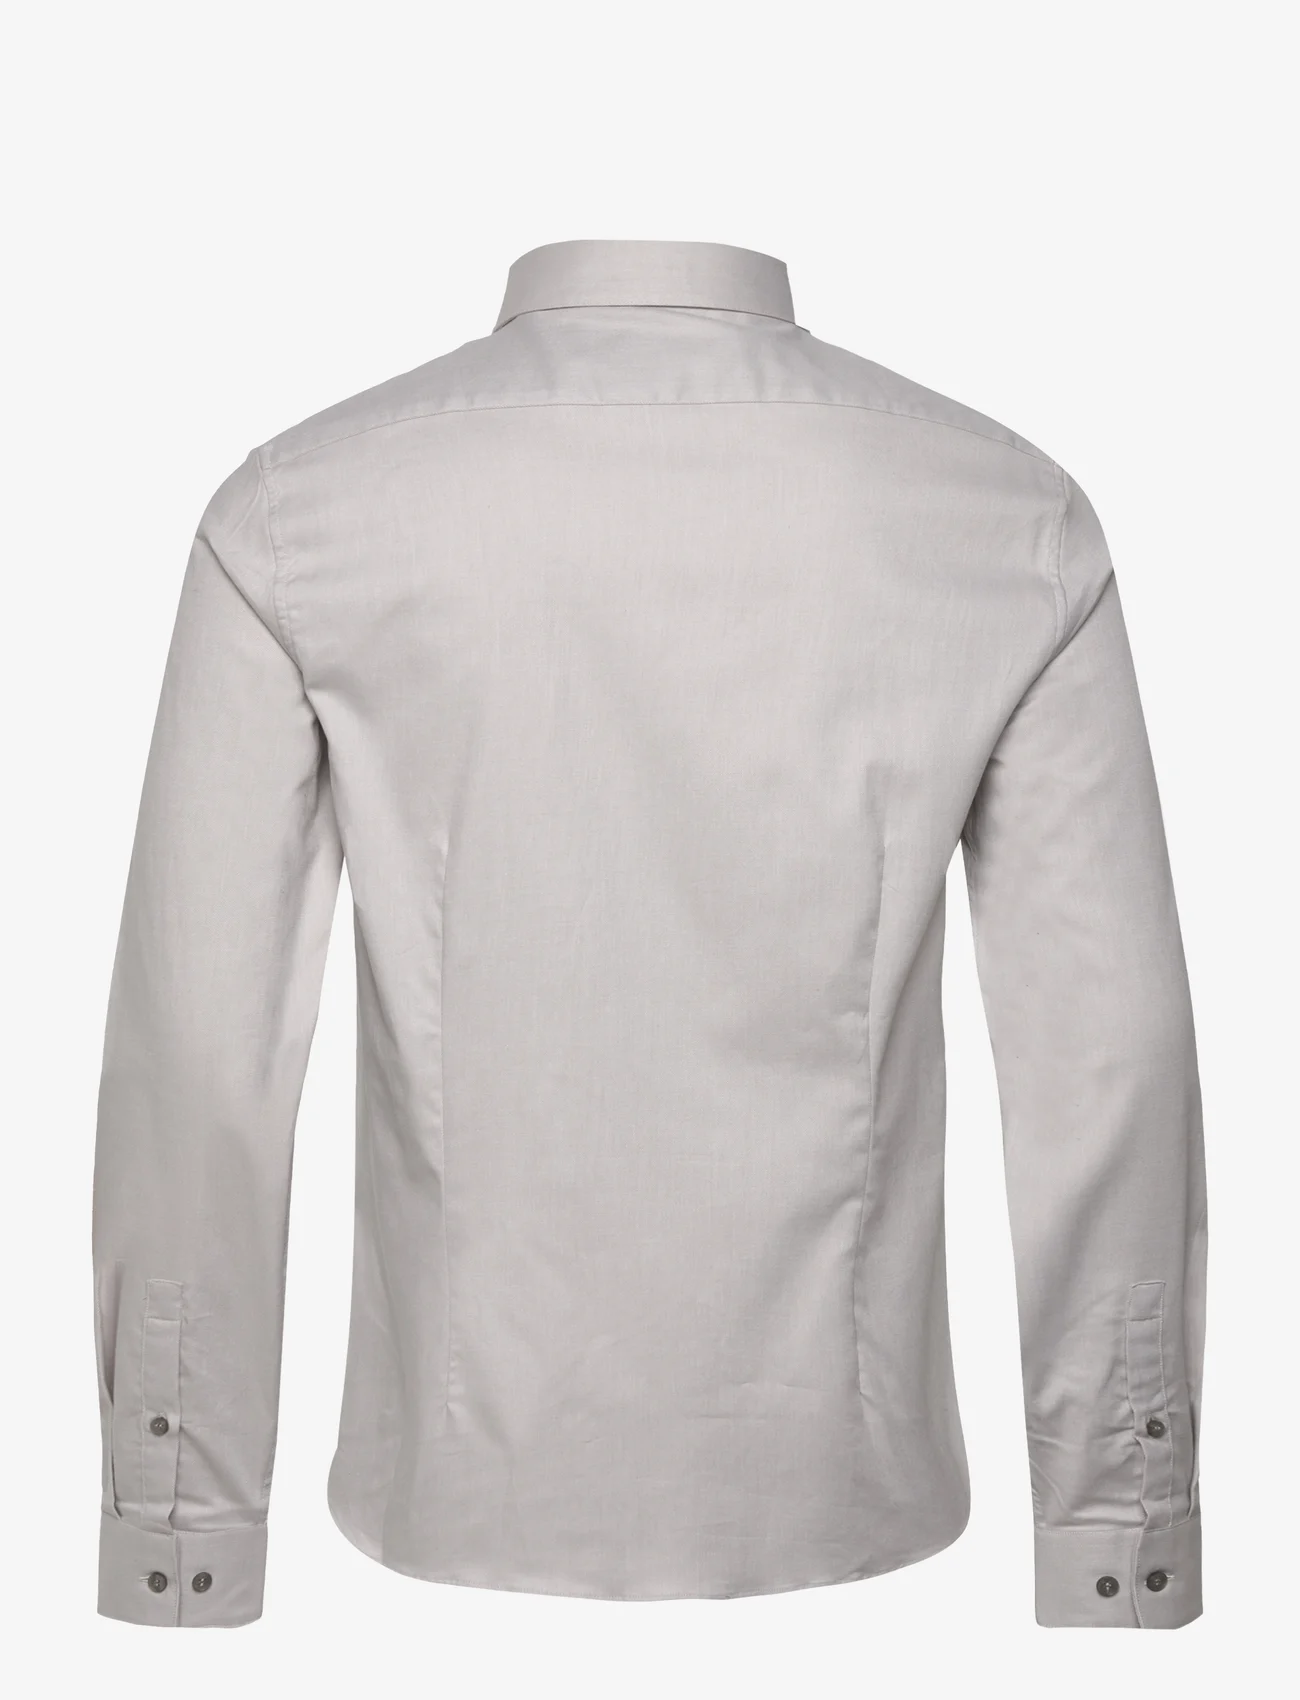 Calvin Klein - TWILL EASY CARE SLIM SHIRT - business skjorter - london fog - 1